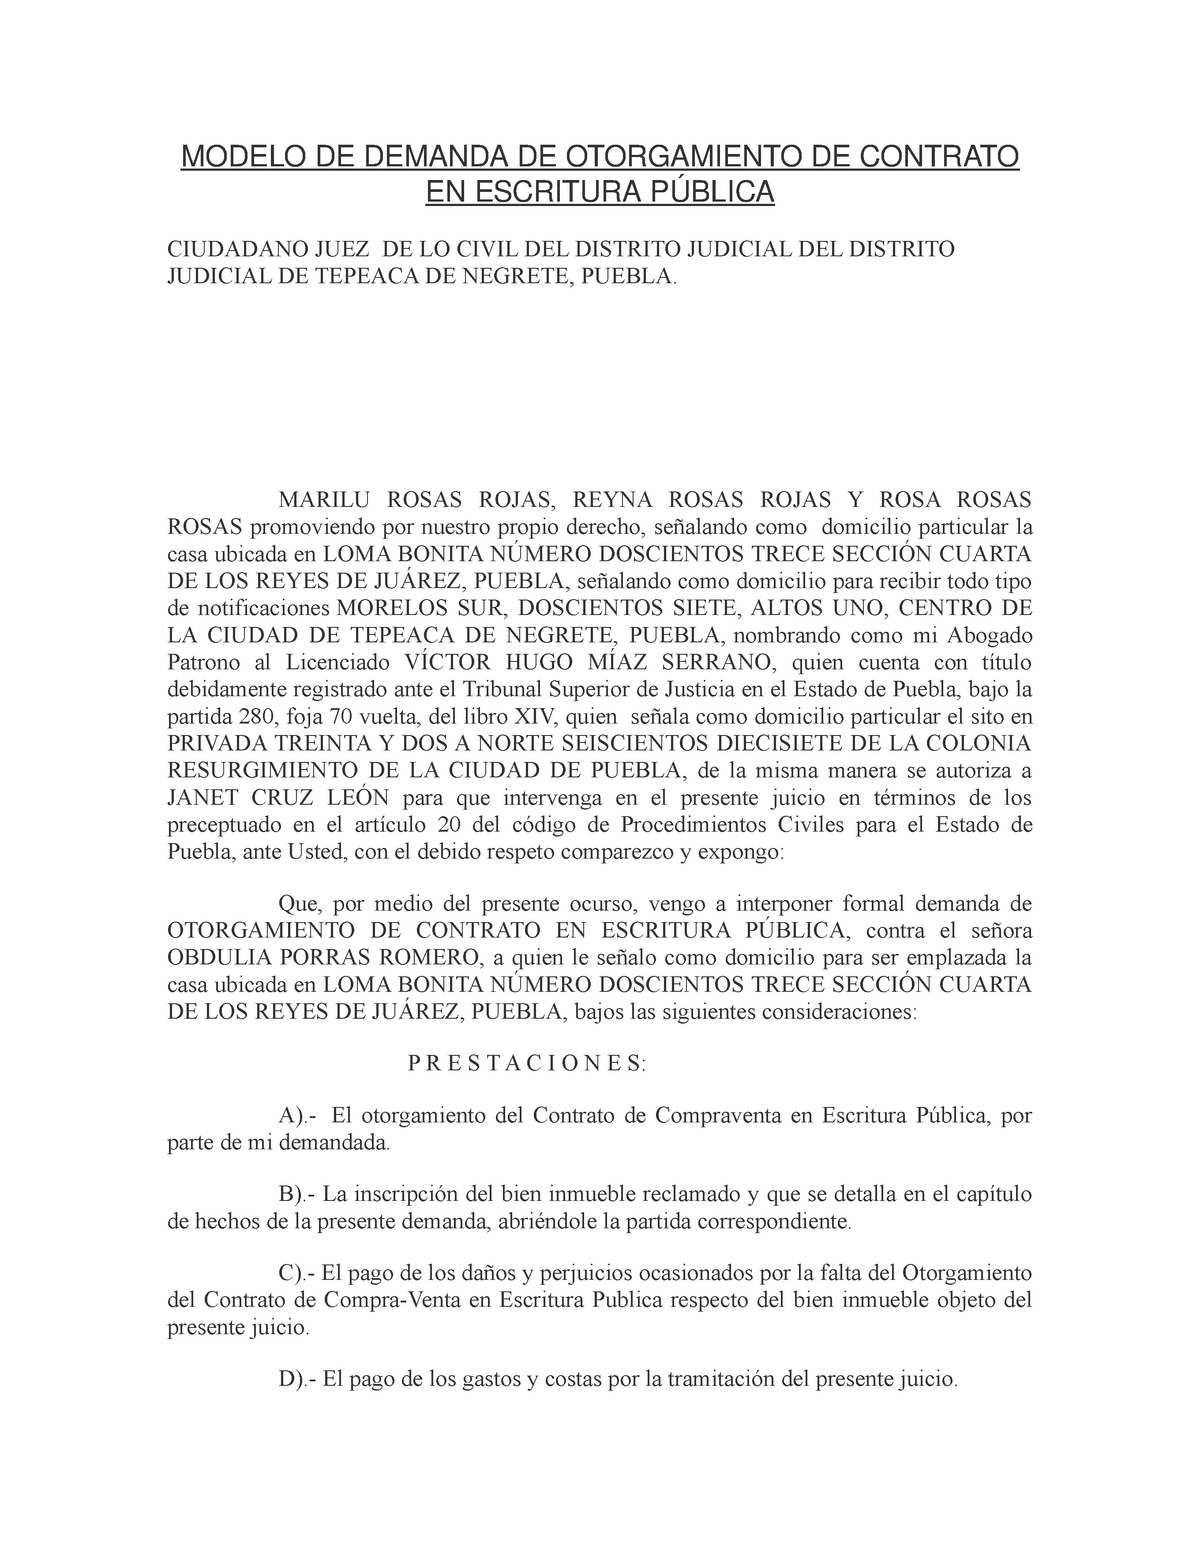 Modelo DE Demanda DE Otorgamiento DE Contrato EN Escritura Pública - MODELO  DE DEMANDA DE - Studocu